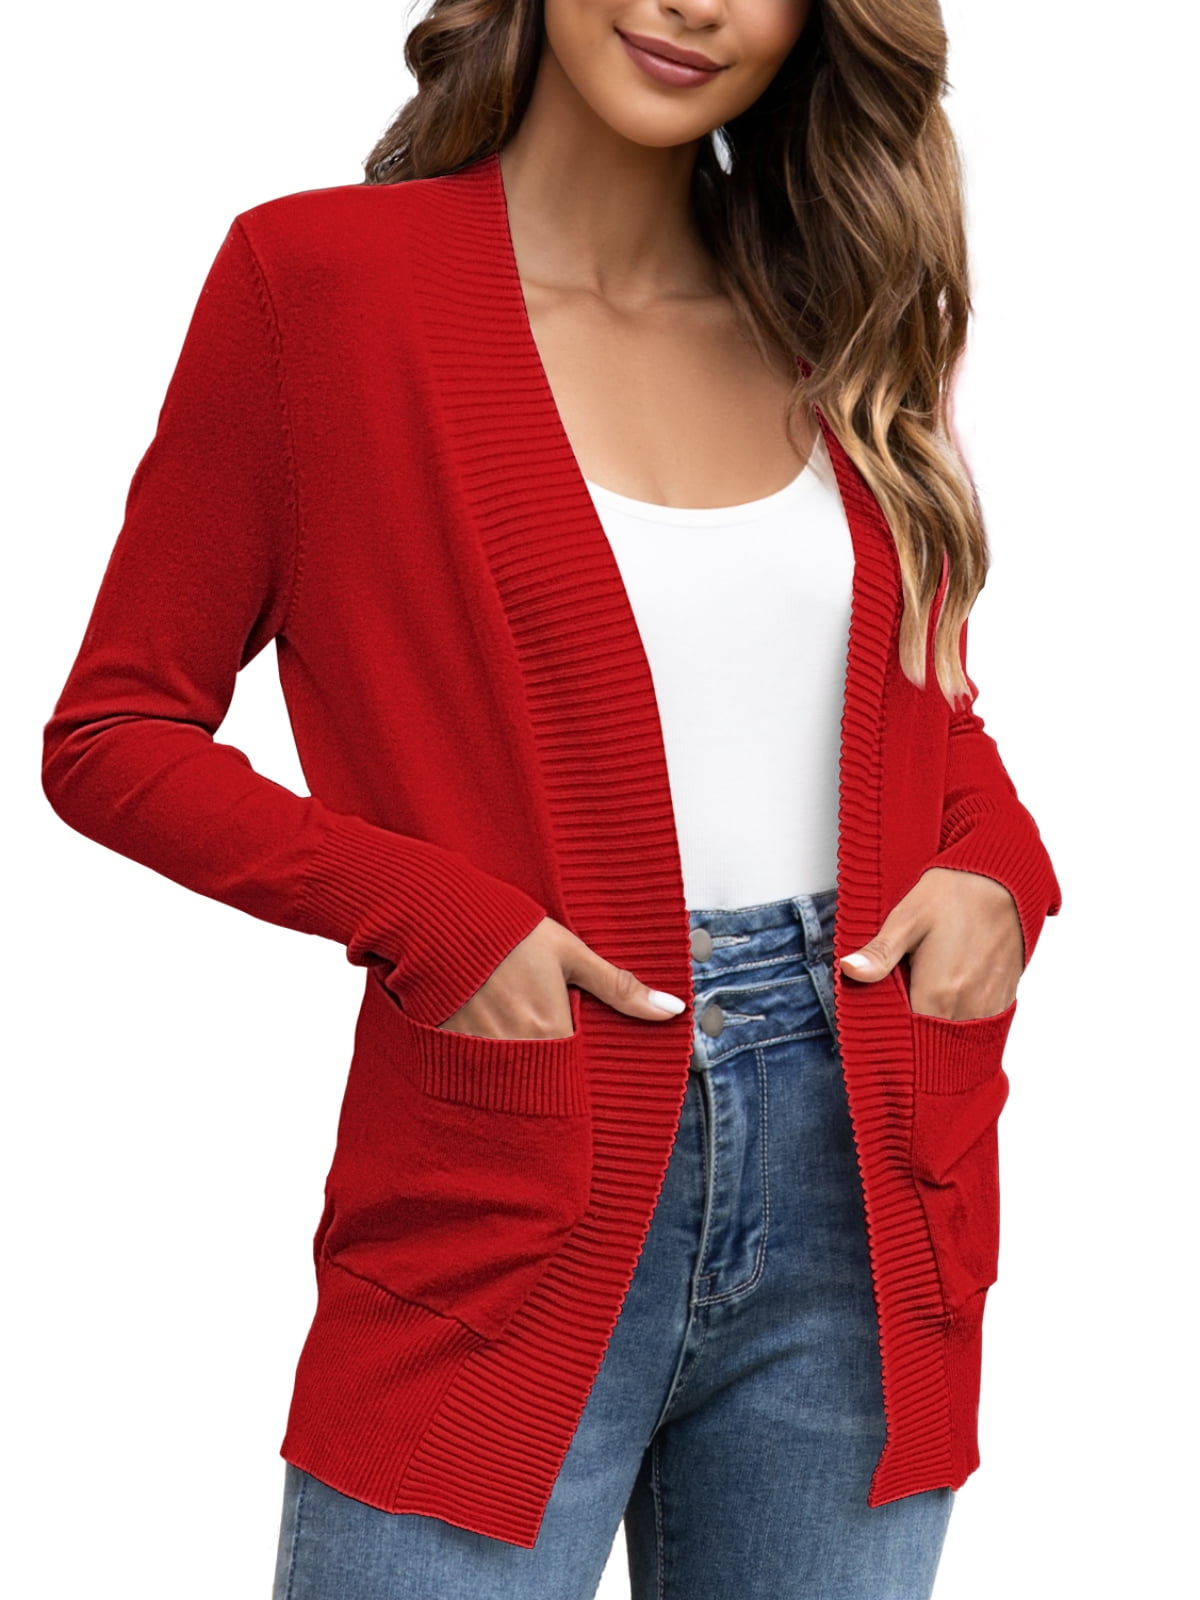 Cardigan Sweaters for Women with Pockets Women’s Boho Lightweight Coat Long Sleeve Open Front Cardigan Tie Dye Outerwear 